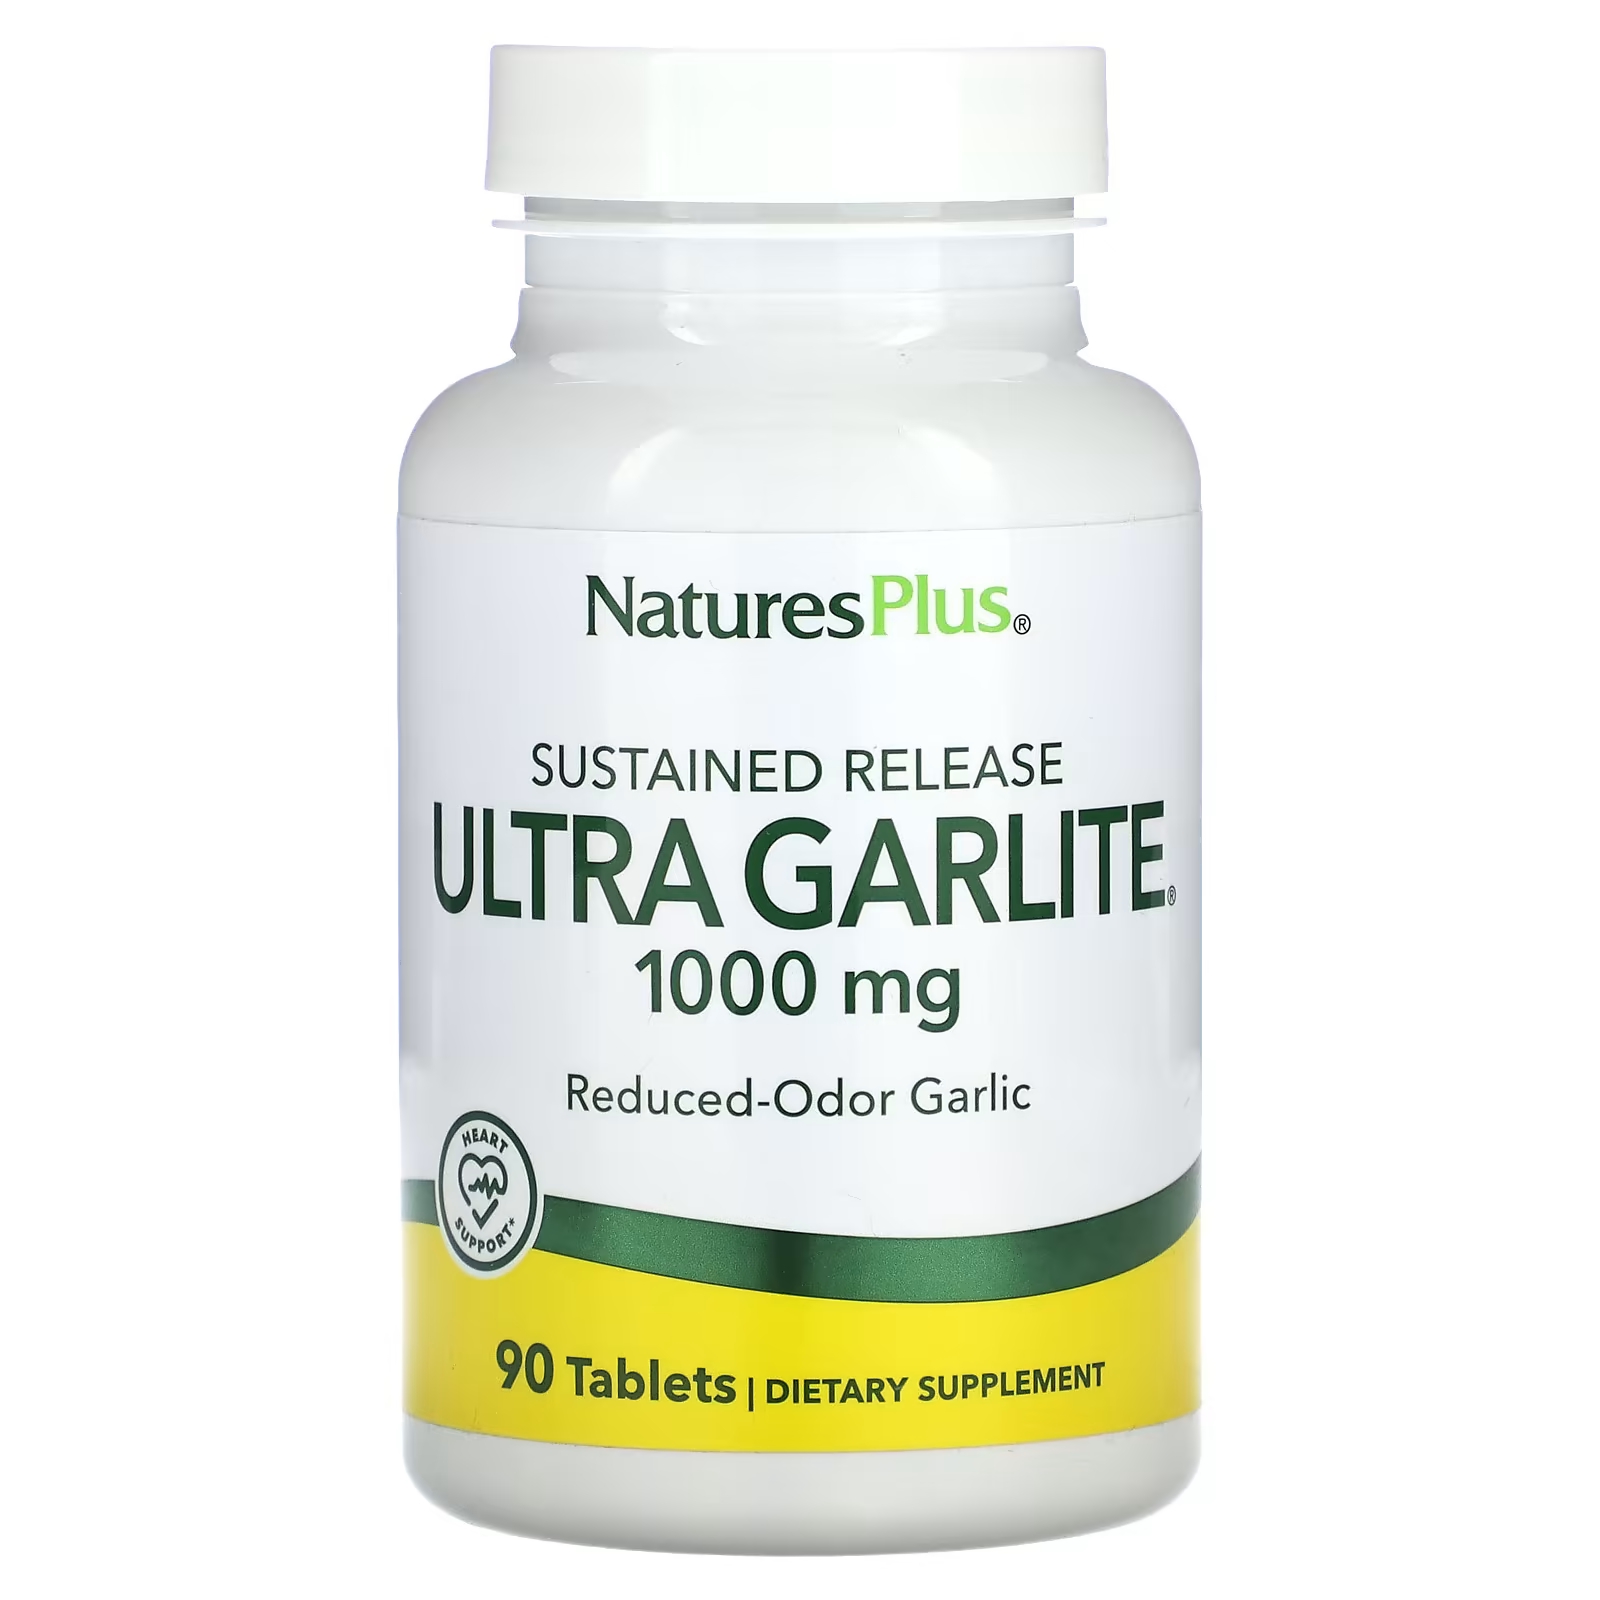 Пищевая добавка Ultra Garlite NaturesPlus пролонгированного действия, 90 таблеток пищевая добавка ultra garlite naturesplus пролонгированного действия 90 таблеток